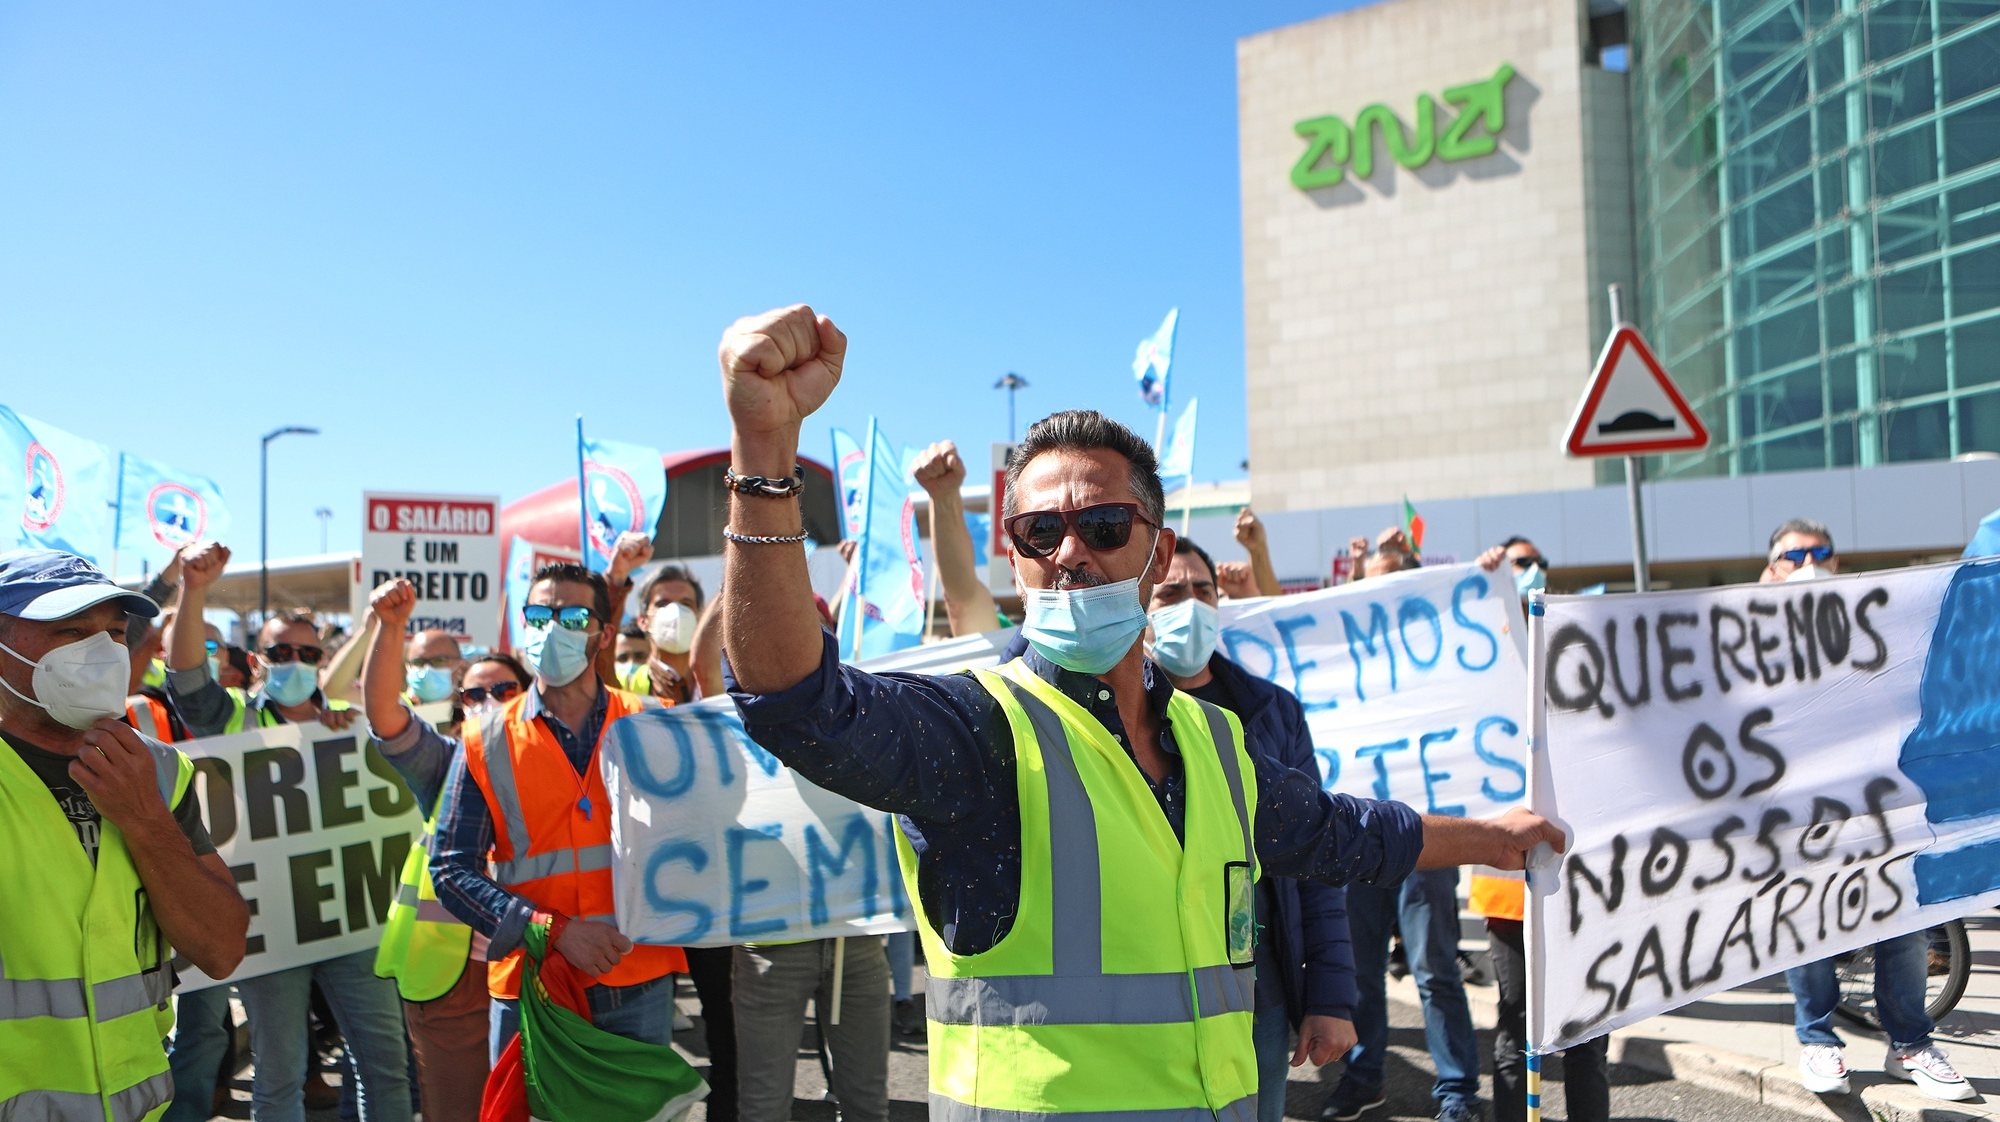 Trabalhadores da SPdH/Groundforce manifestam-se em frente à zona das chegadas do Aeroporto Humberto Delgado, em Lisboa, 18 de Março de 2021. O protesto convocado pela Comissão de Trabalhadores prende-se com o não pagamento de salários e os despedimentos anunciados. ANTÓNIO PEDRO SANTOS/LUSA